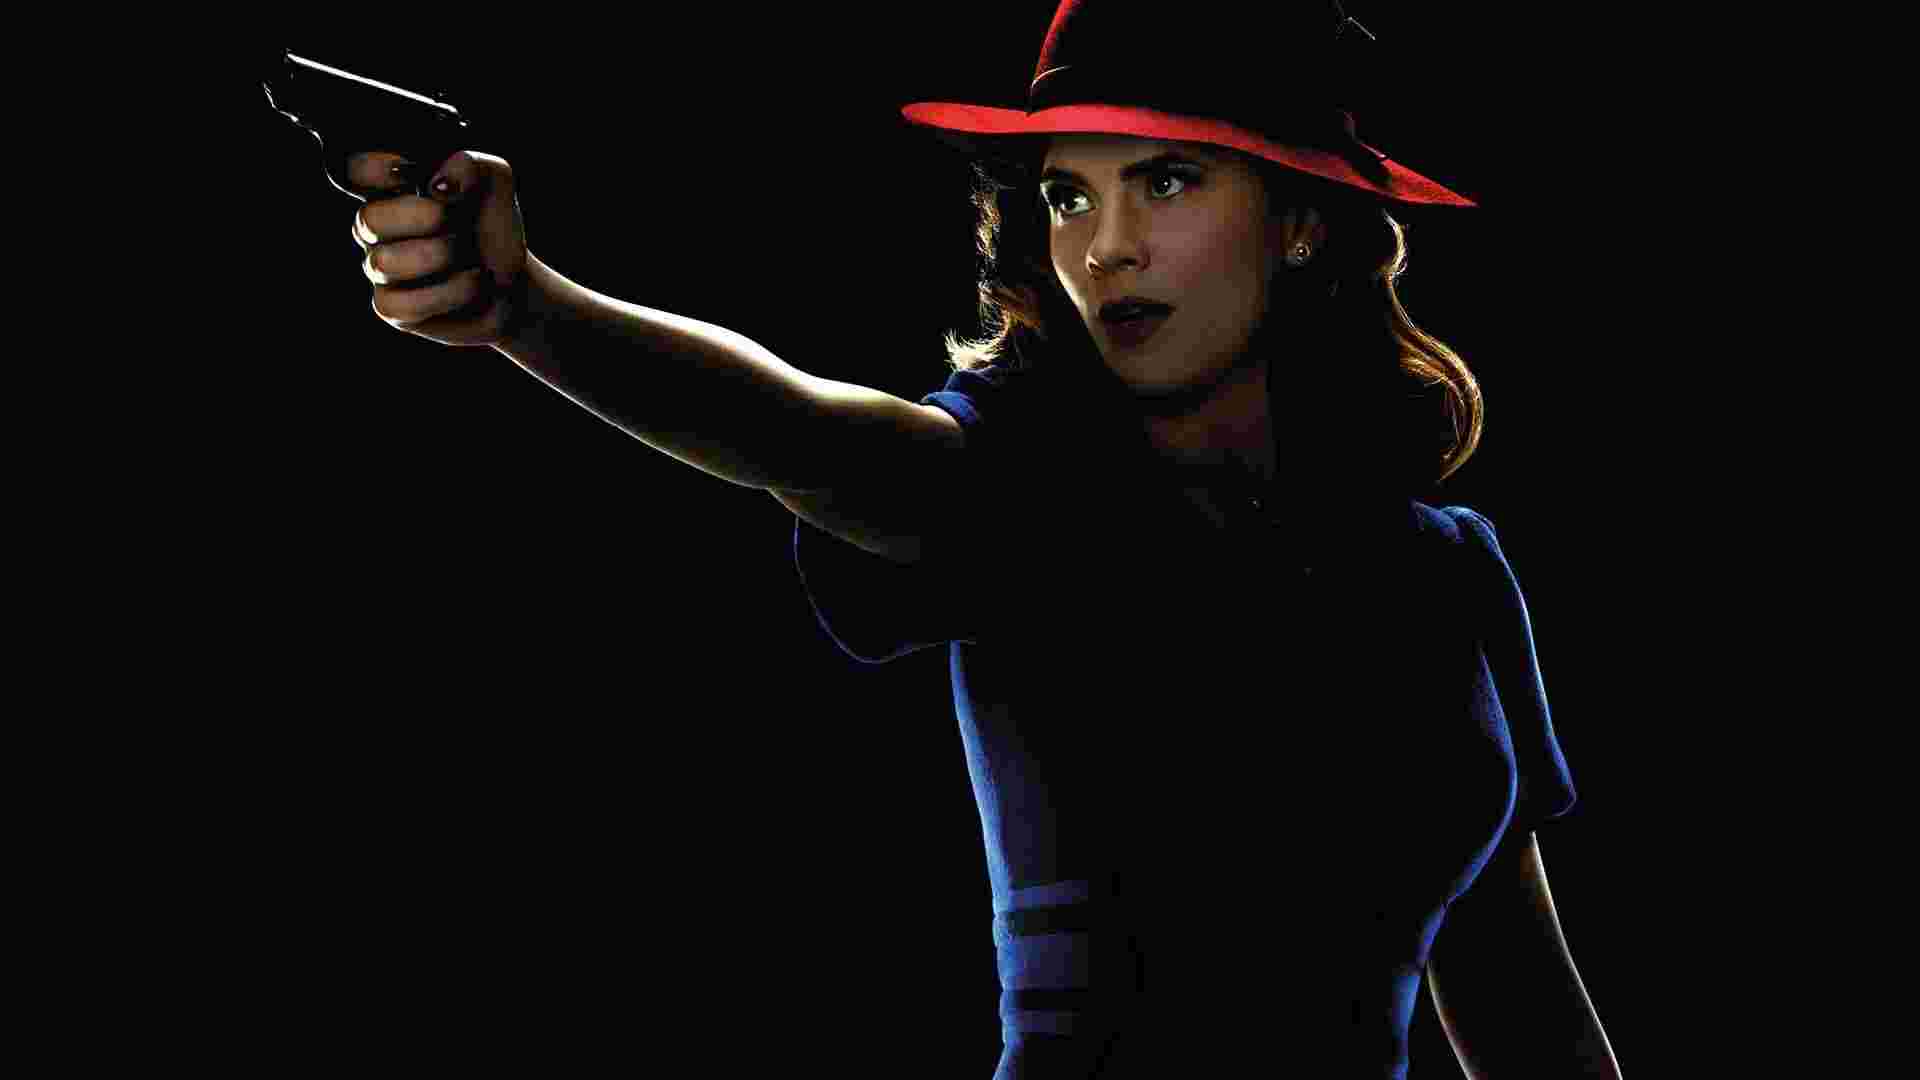 Агент Картер девушка пистолет шляпа бесплатно